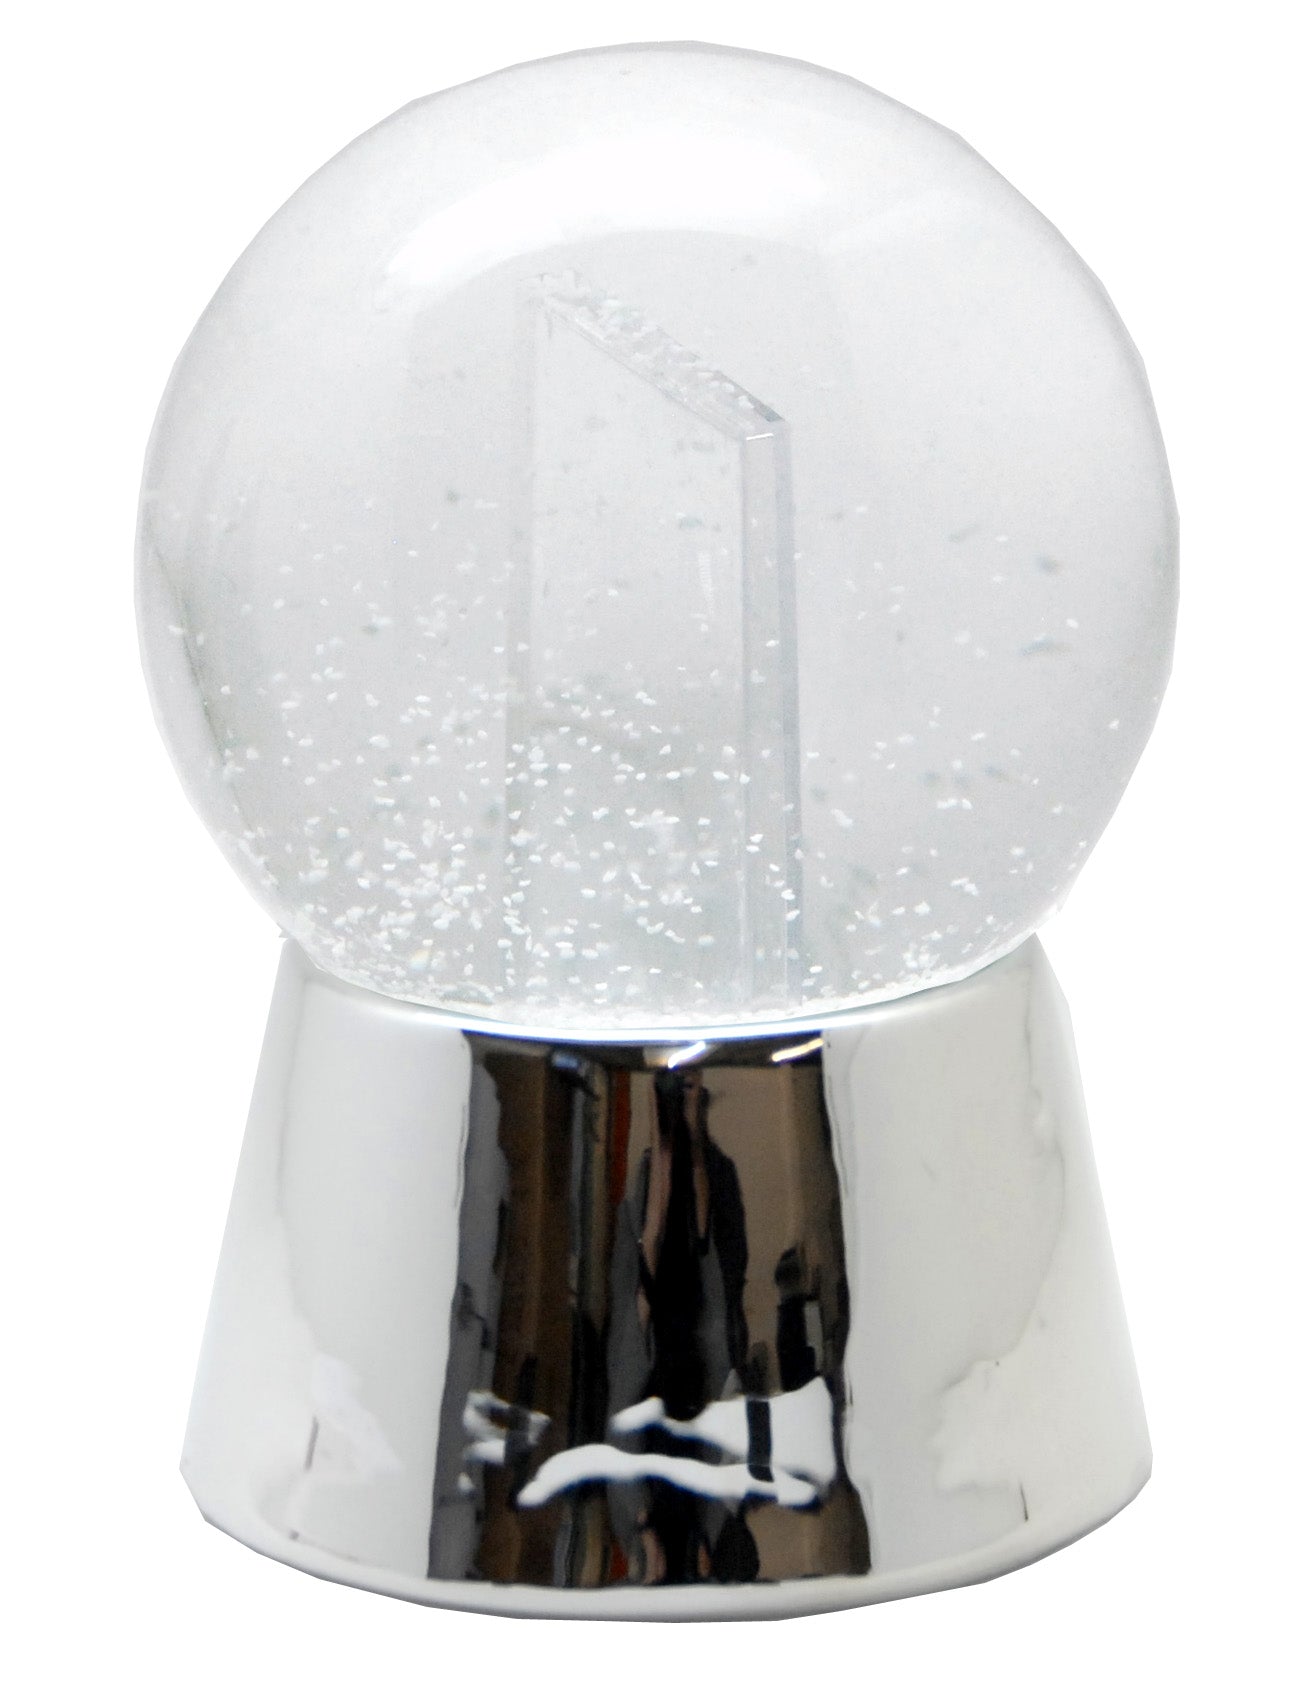 Bastelset mit 100mm Glas für DIY-Schneekugel mit Fotoeinsatz mit Porzellan-Sockel silber glänzend - Schneekugelhaus